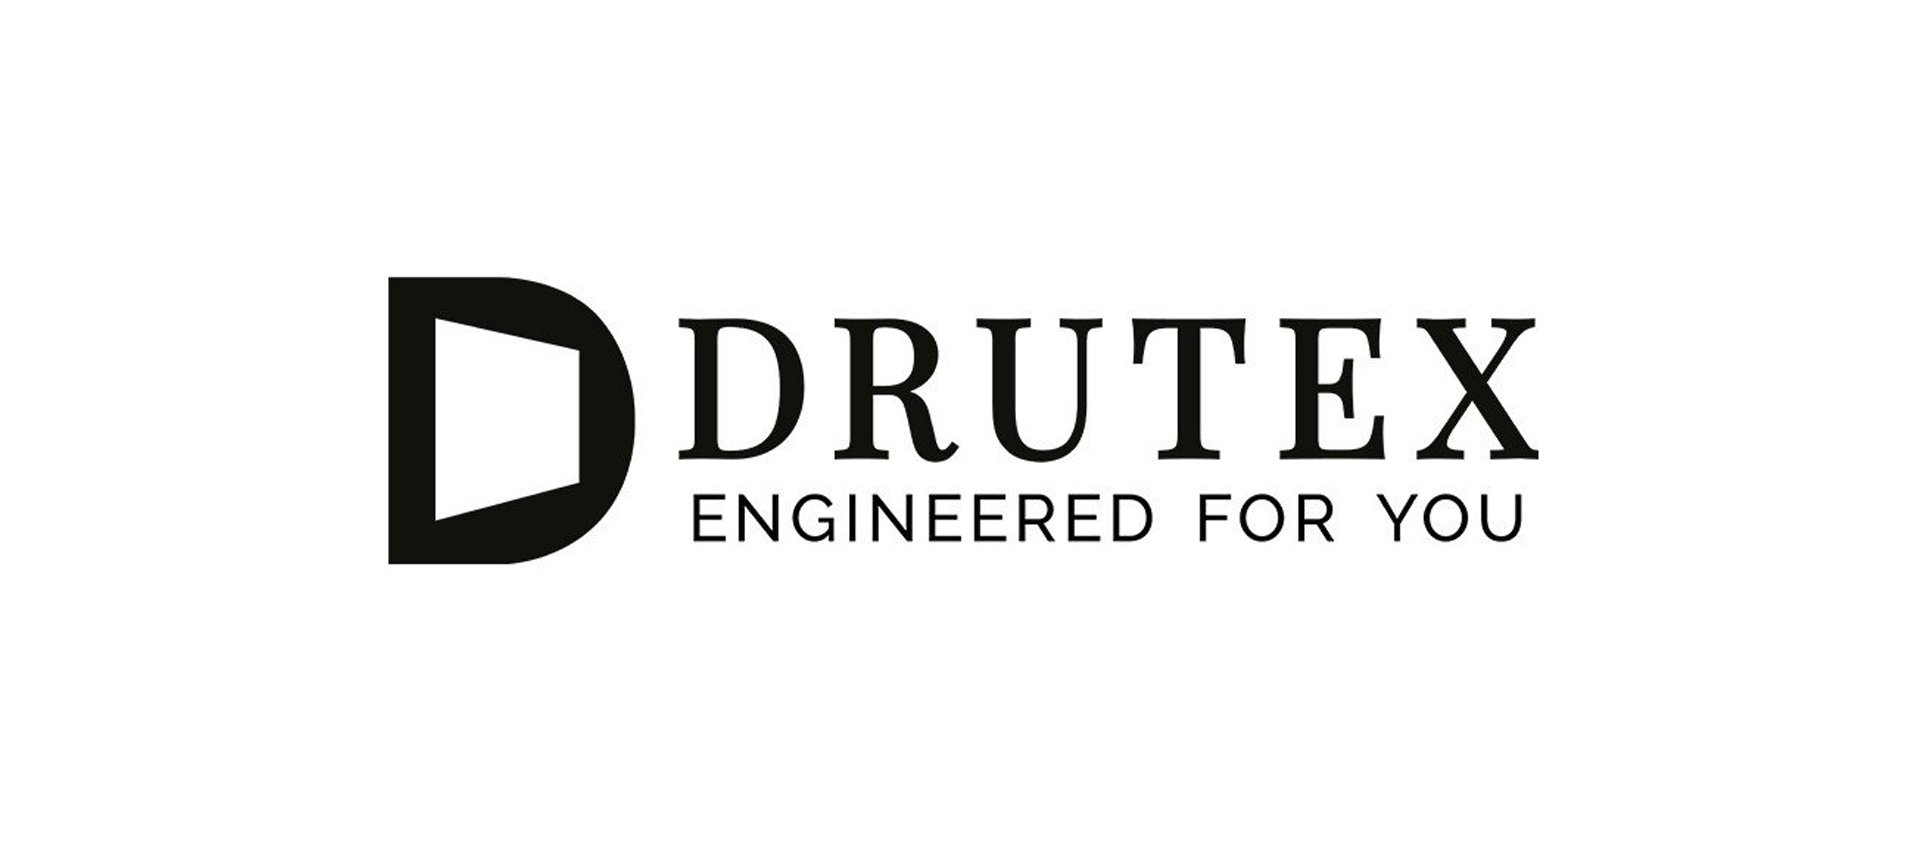 DRUTEX verpasst sich neuen Markenauftritt